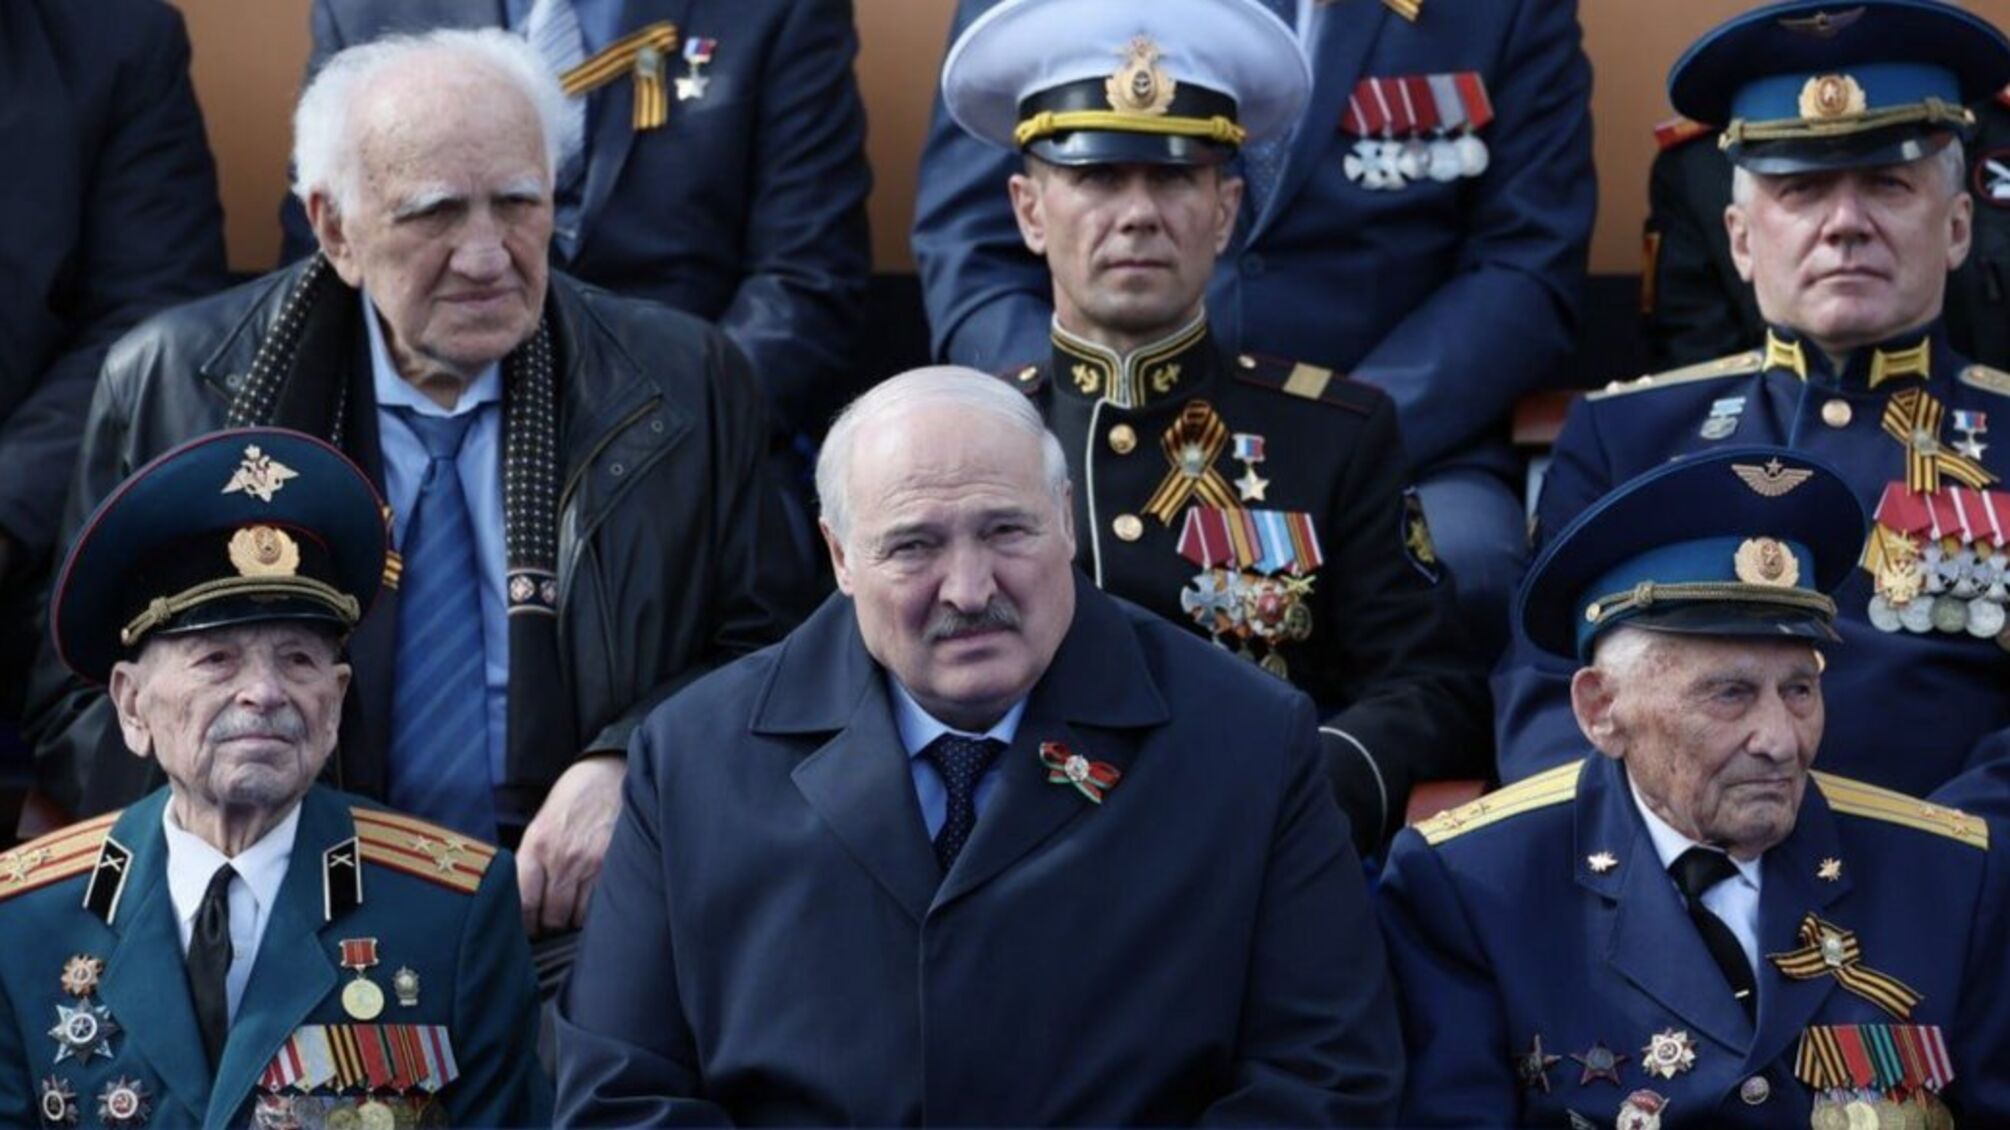 Лукашенко госпитализировали после встречи с путиным, – оппозиционер Цепкало